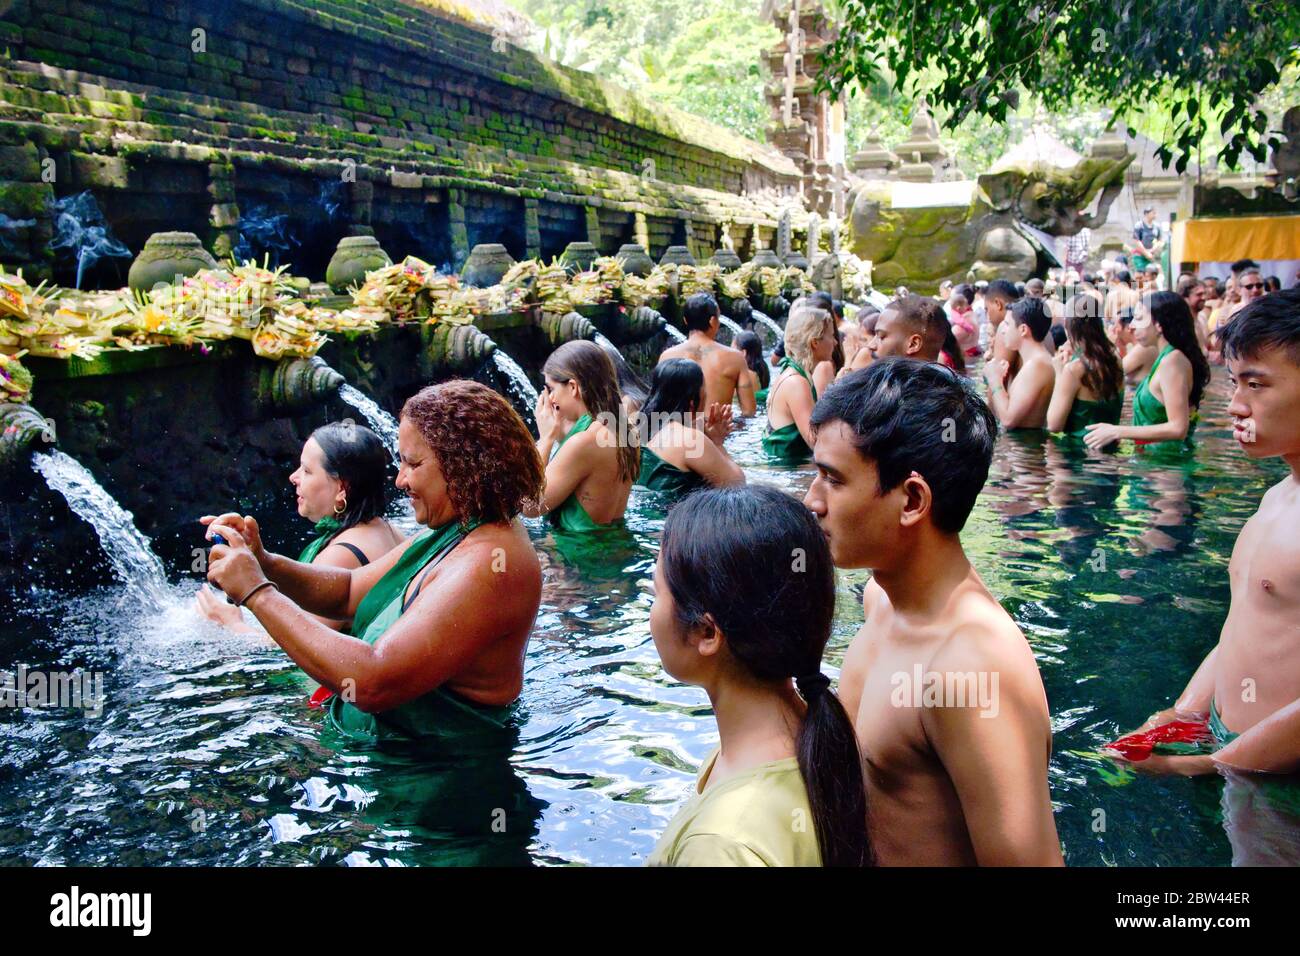 Saint temple d'eau de source à Bali, Indonésie. (Indonésien : Pura Tirta Empul) est un temple d'eau hindou balinais Banque D'Images